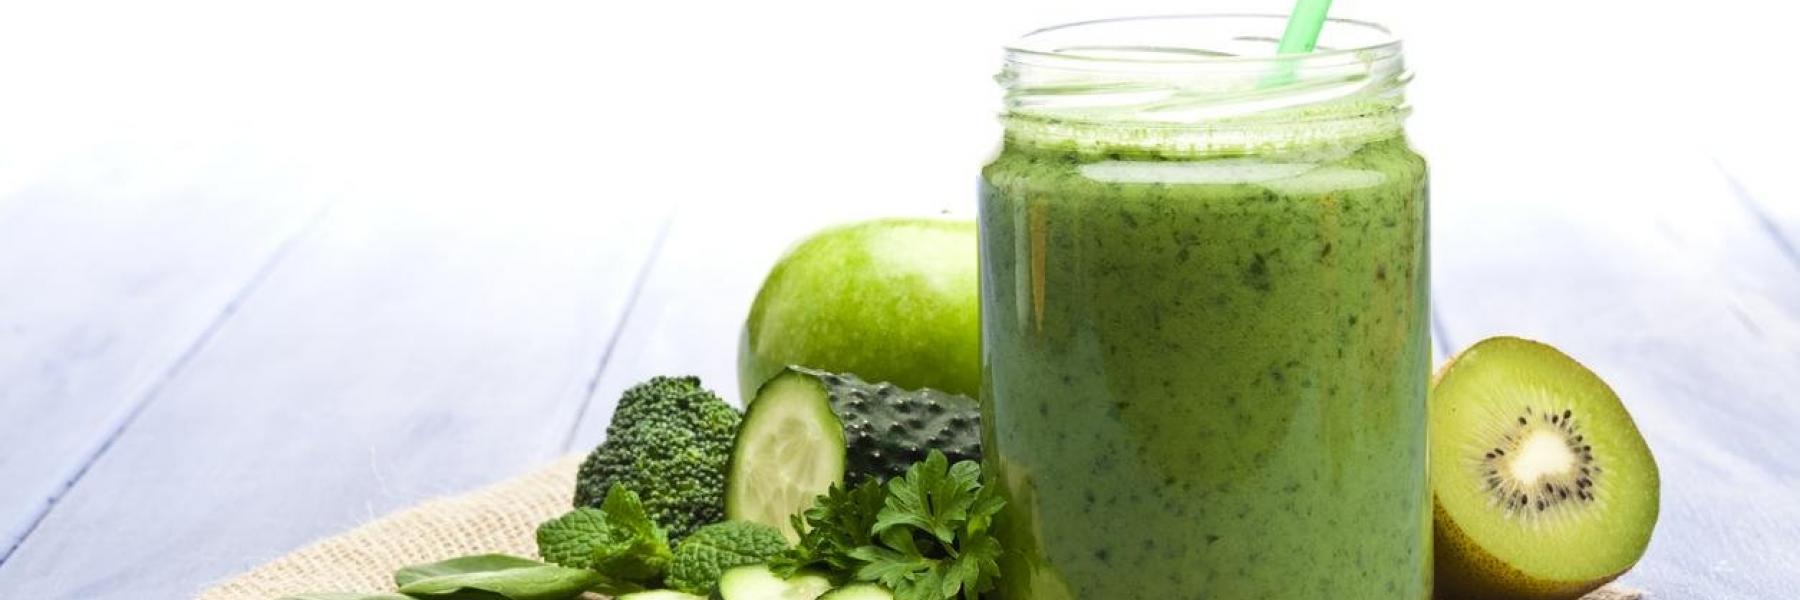 هذا ما يحدث لجسمك عند تناول العصير الأخضر يومياً